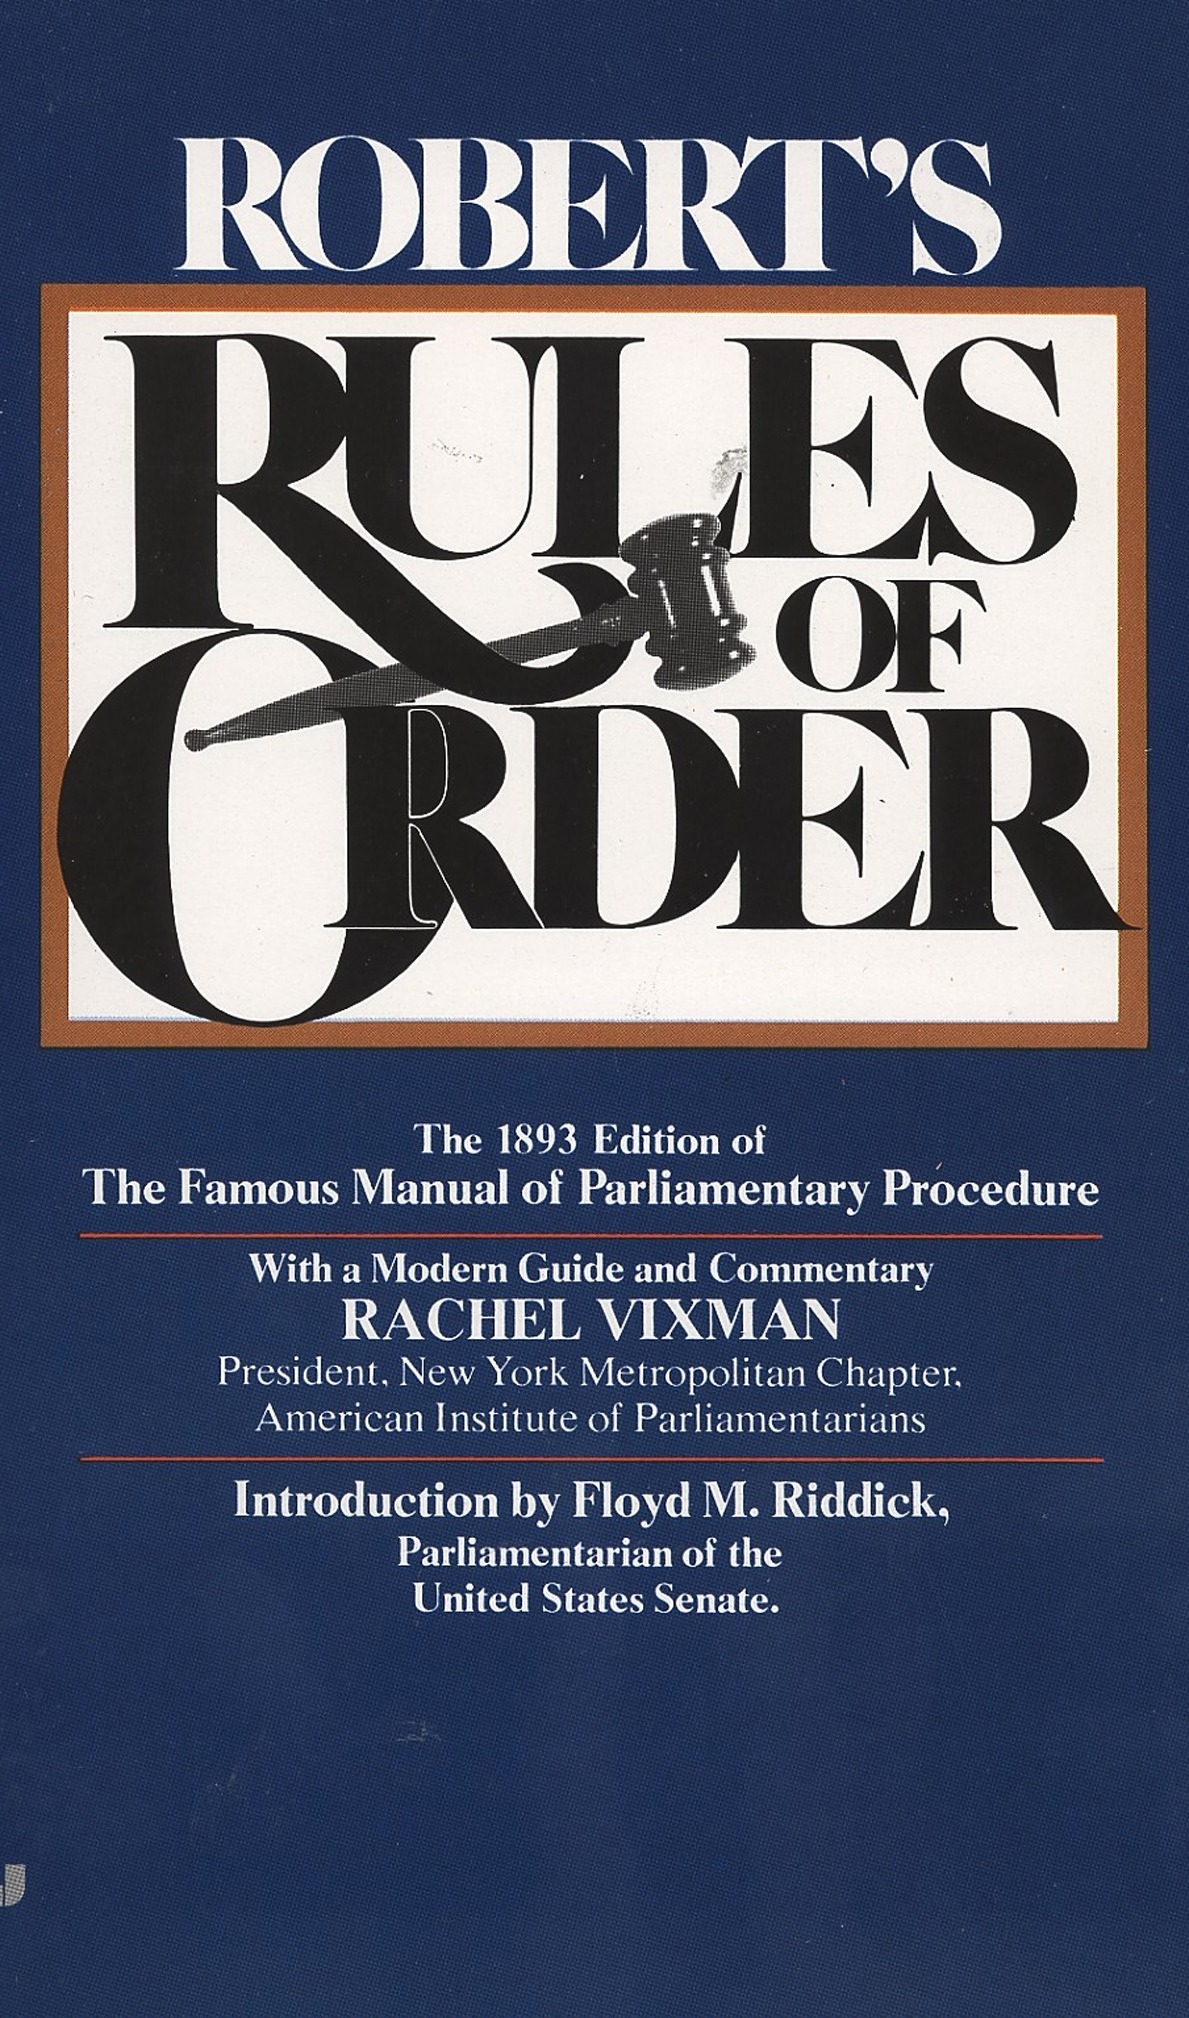 Robert's Rules of Order by Henry M. Robert Penguin Books Australia